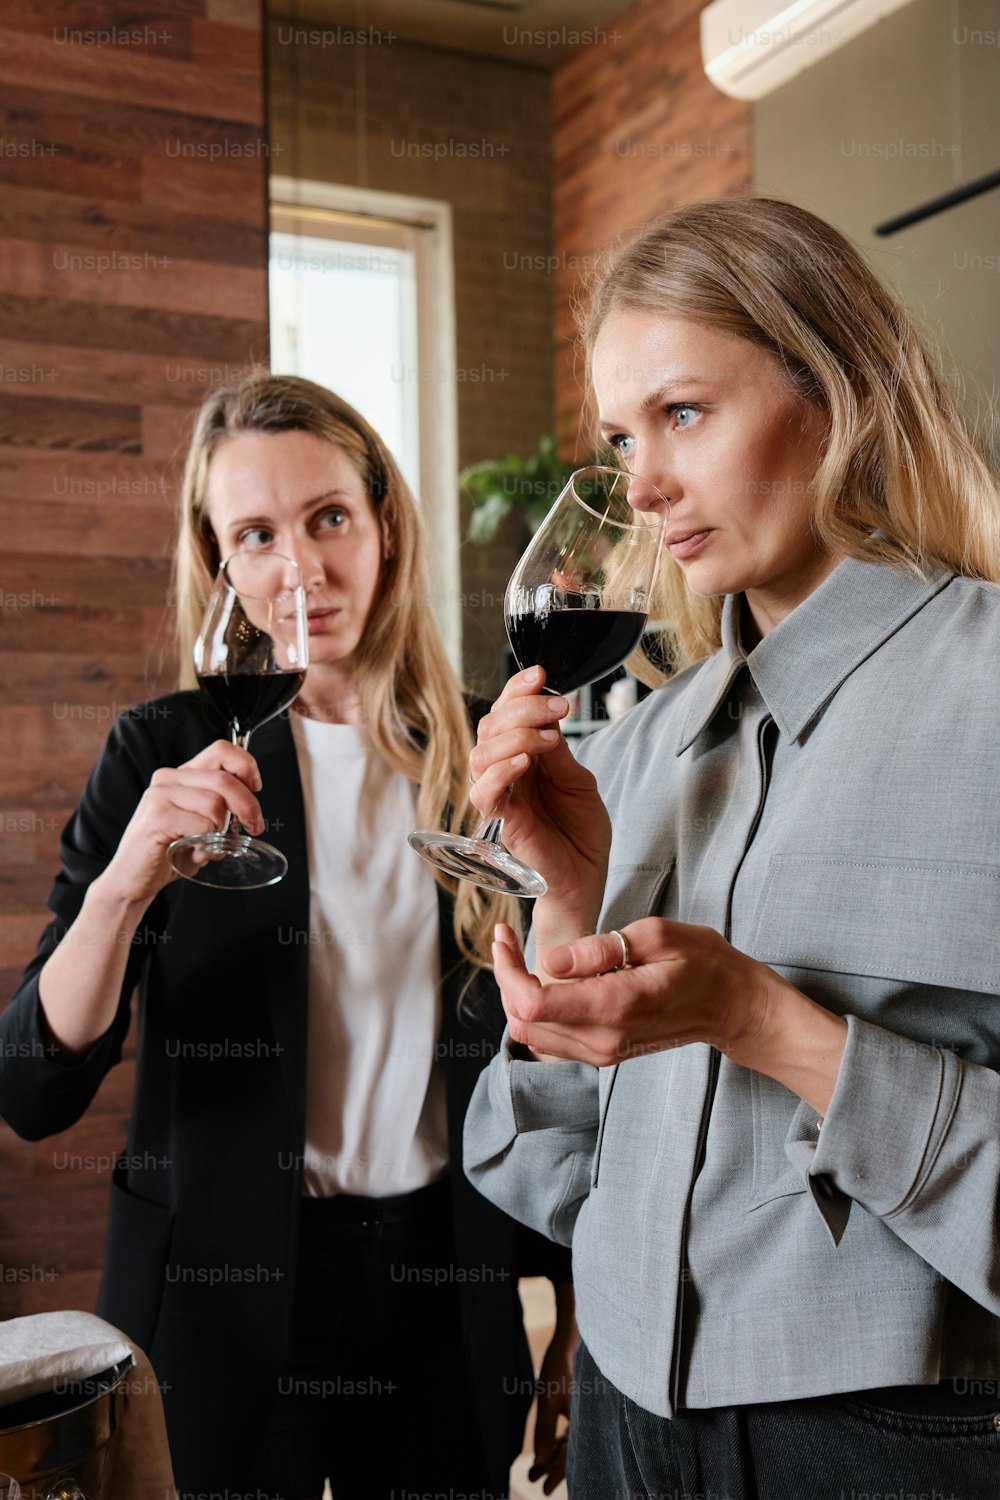 ワイングラスを持って隣り合って立つ2人の女性